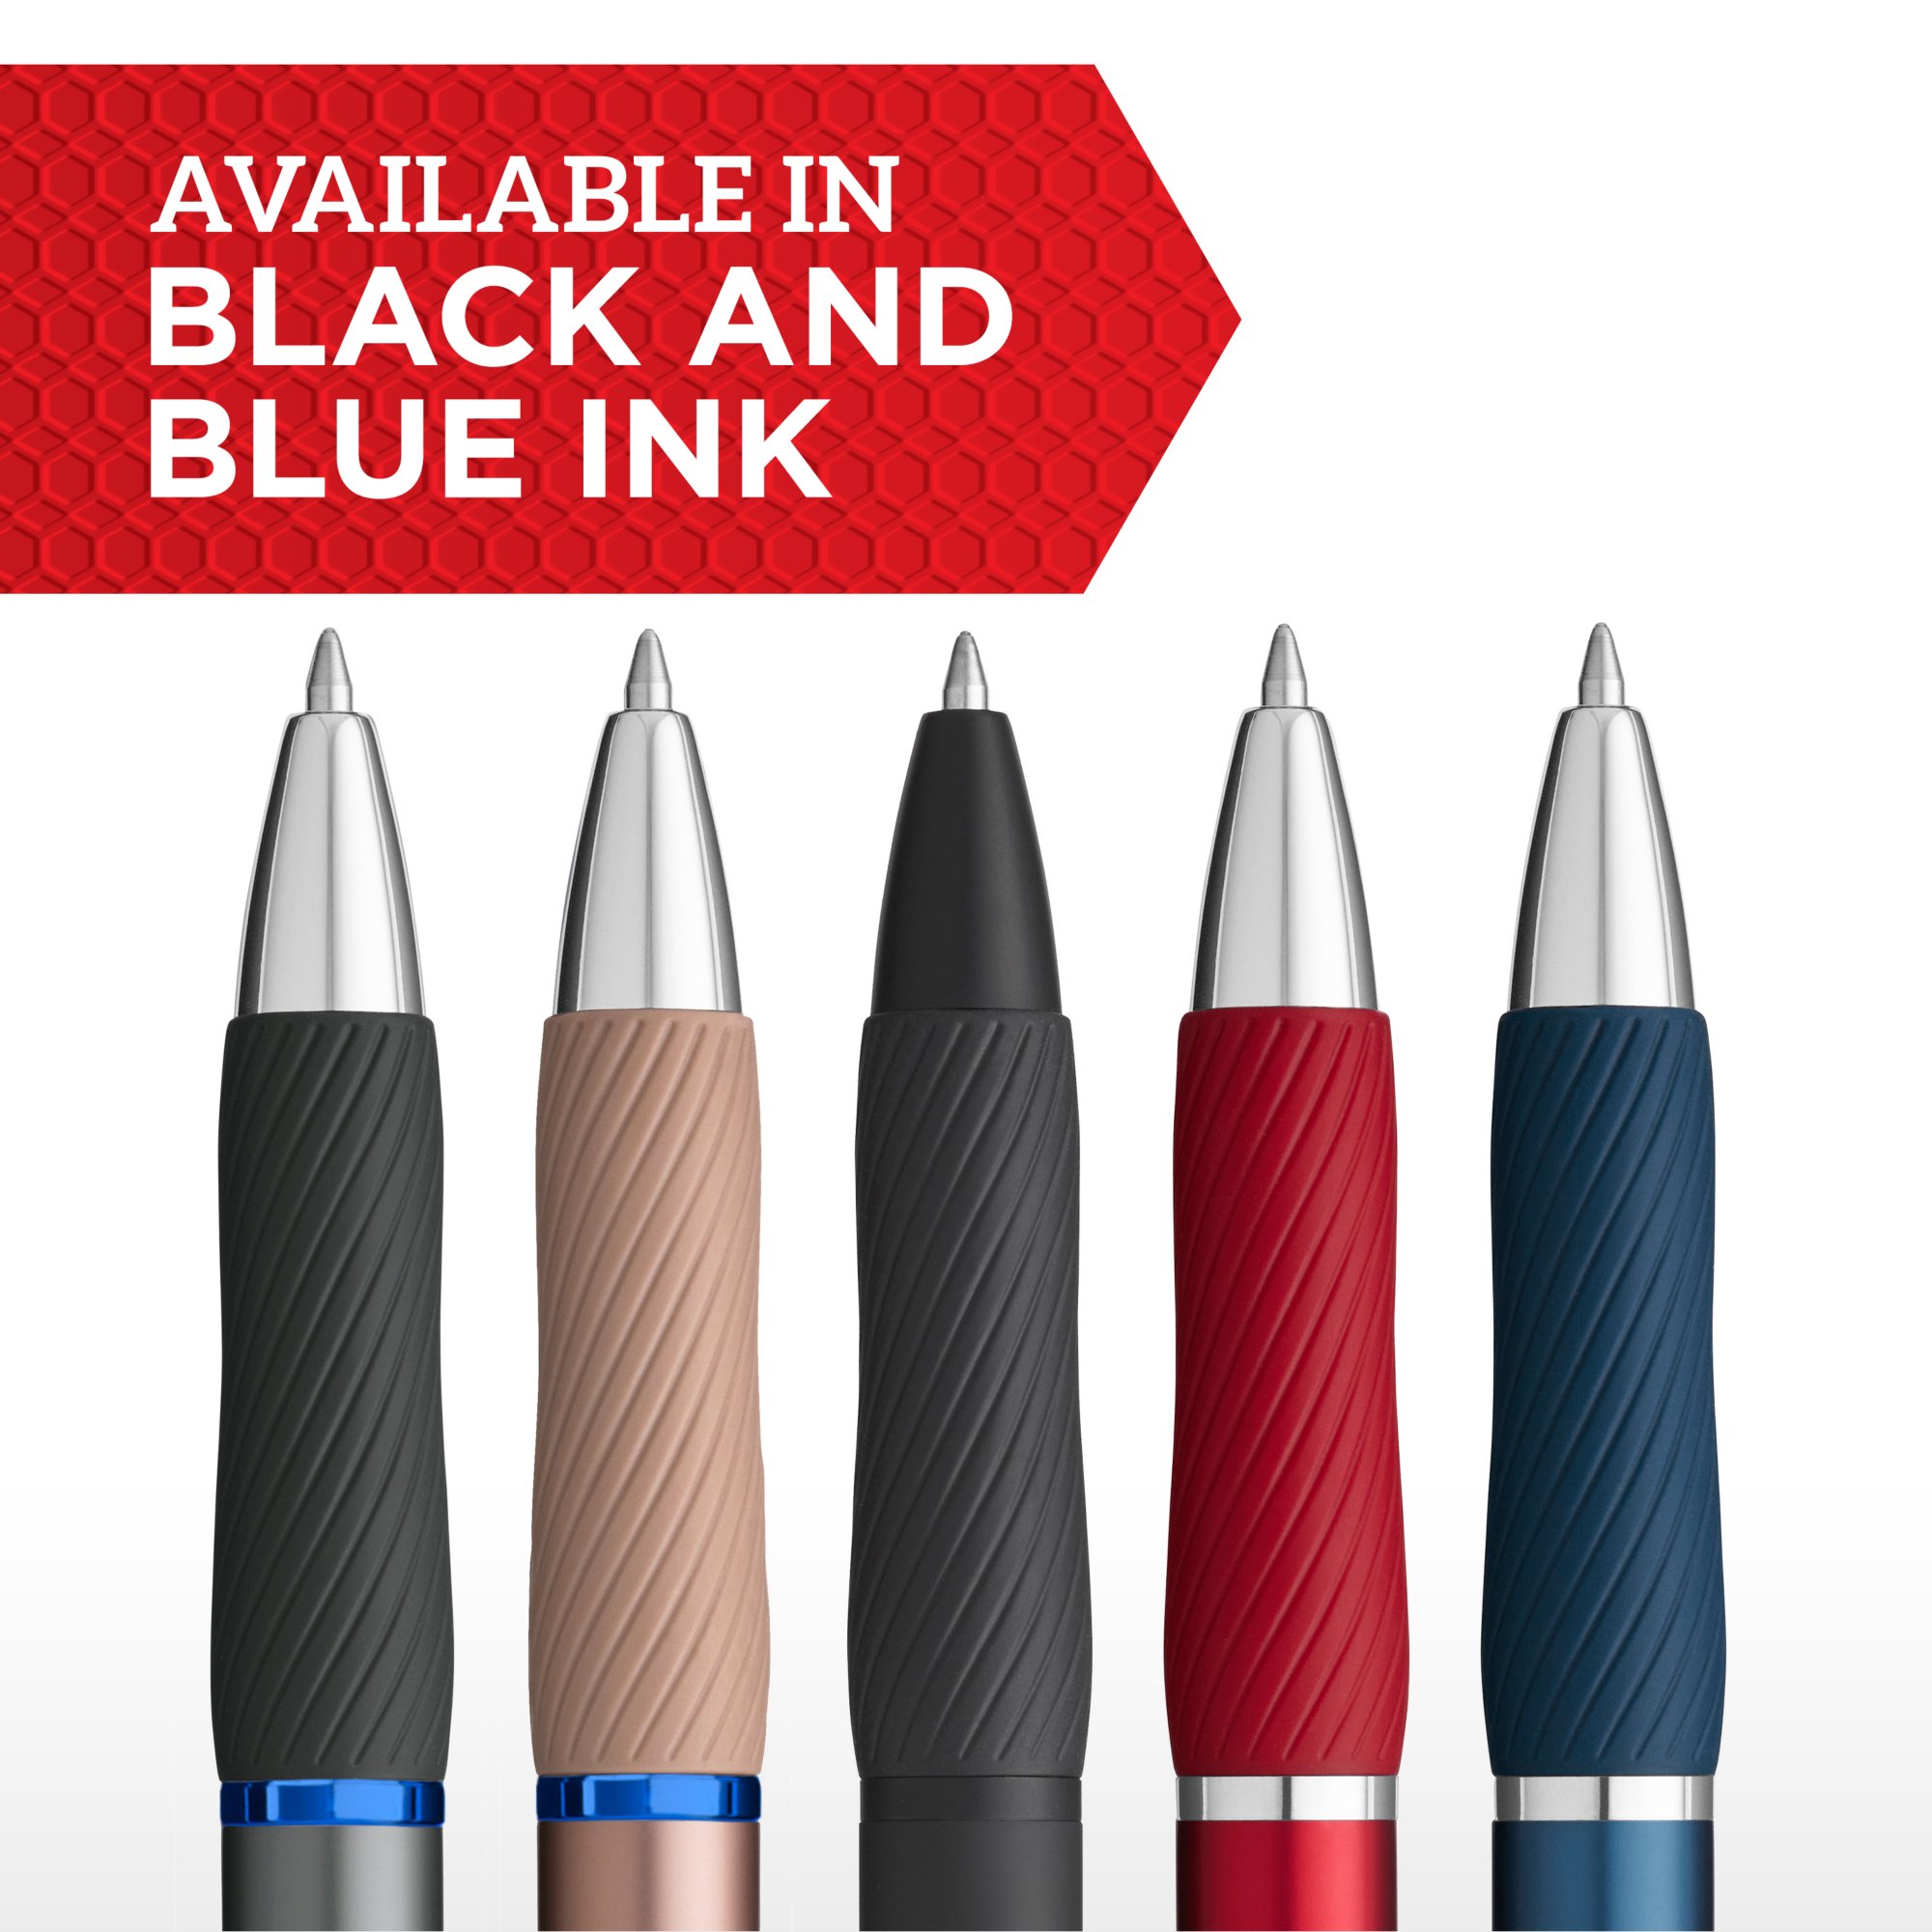 Sharpie S Gel Pens, Medium Point, 0.7 mm Vivid Black Ink 16 Pack